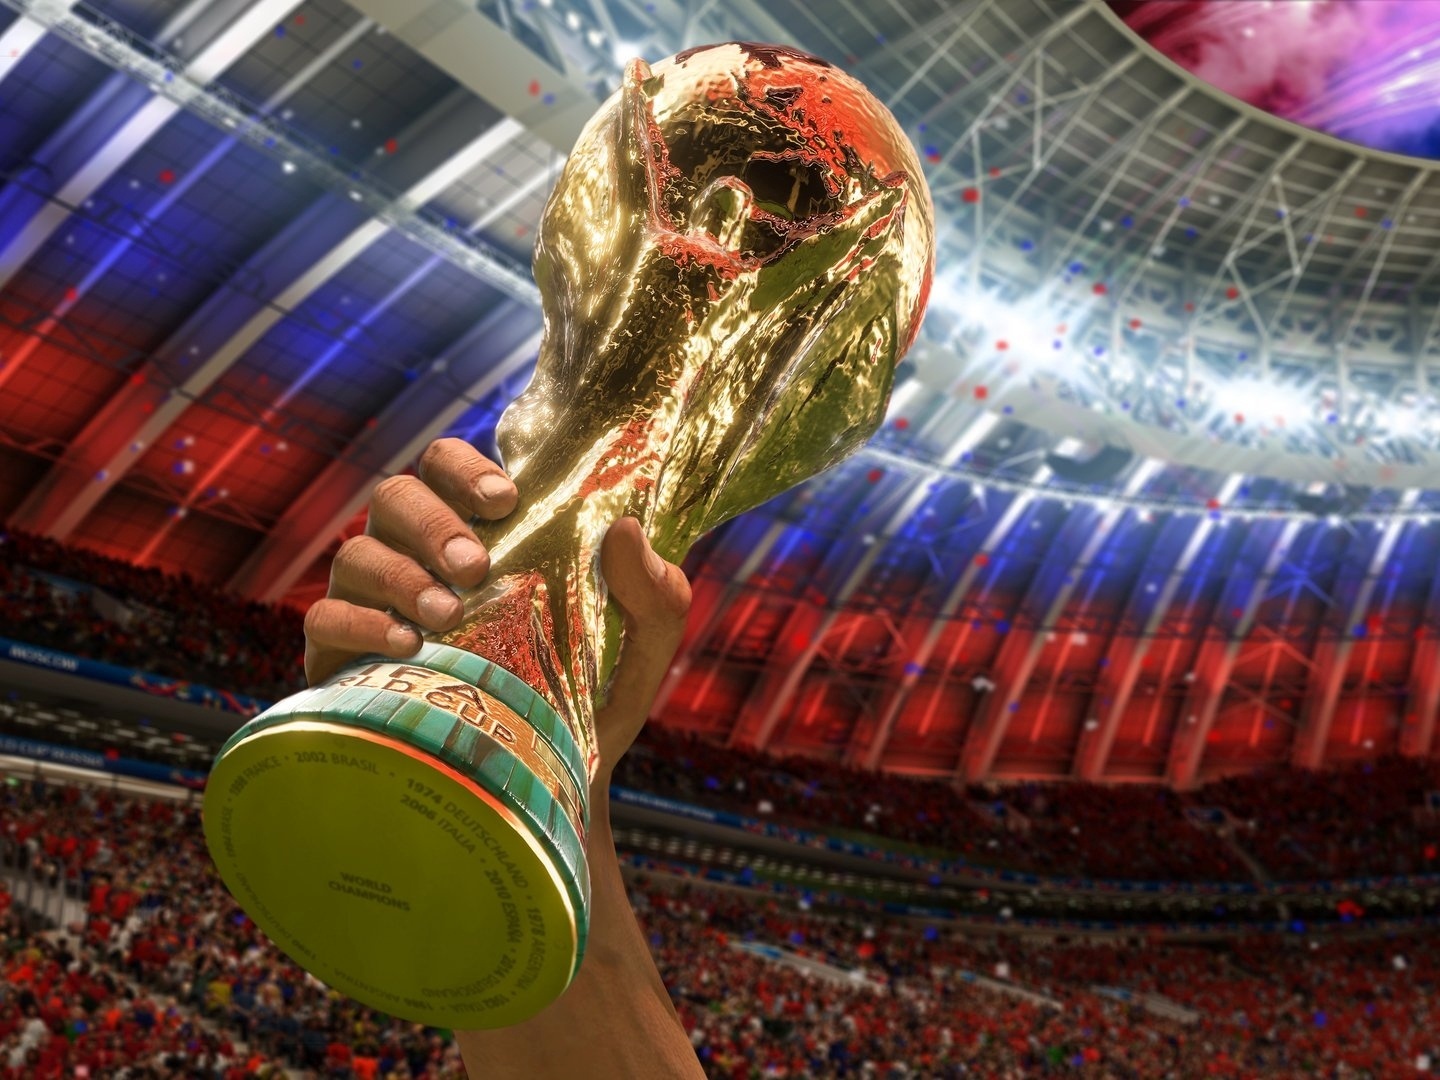 Copa do Mundo FIFA Brasil 2014: testamos o novo game da franquia